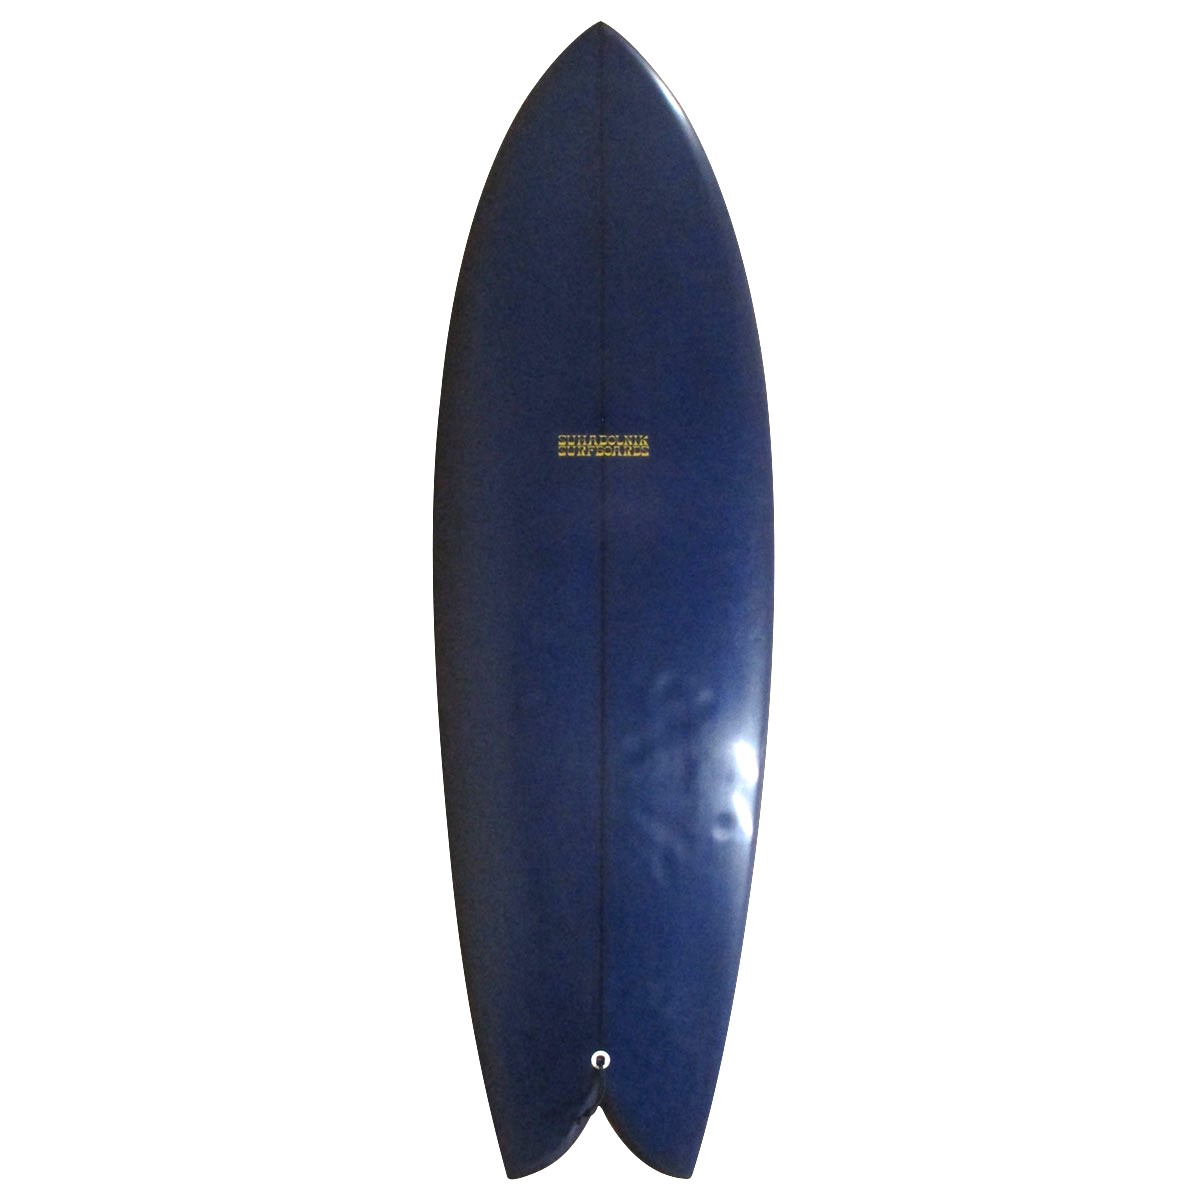 SUHADOLNIK SURFBOARDS / SUHADOLNIK SURFBOARDS / SD FISH 5`5